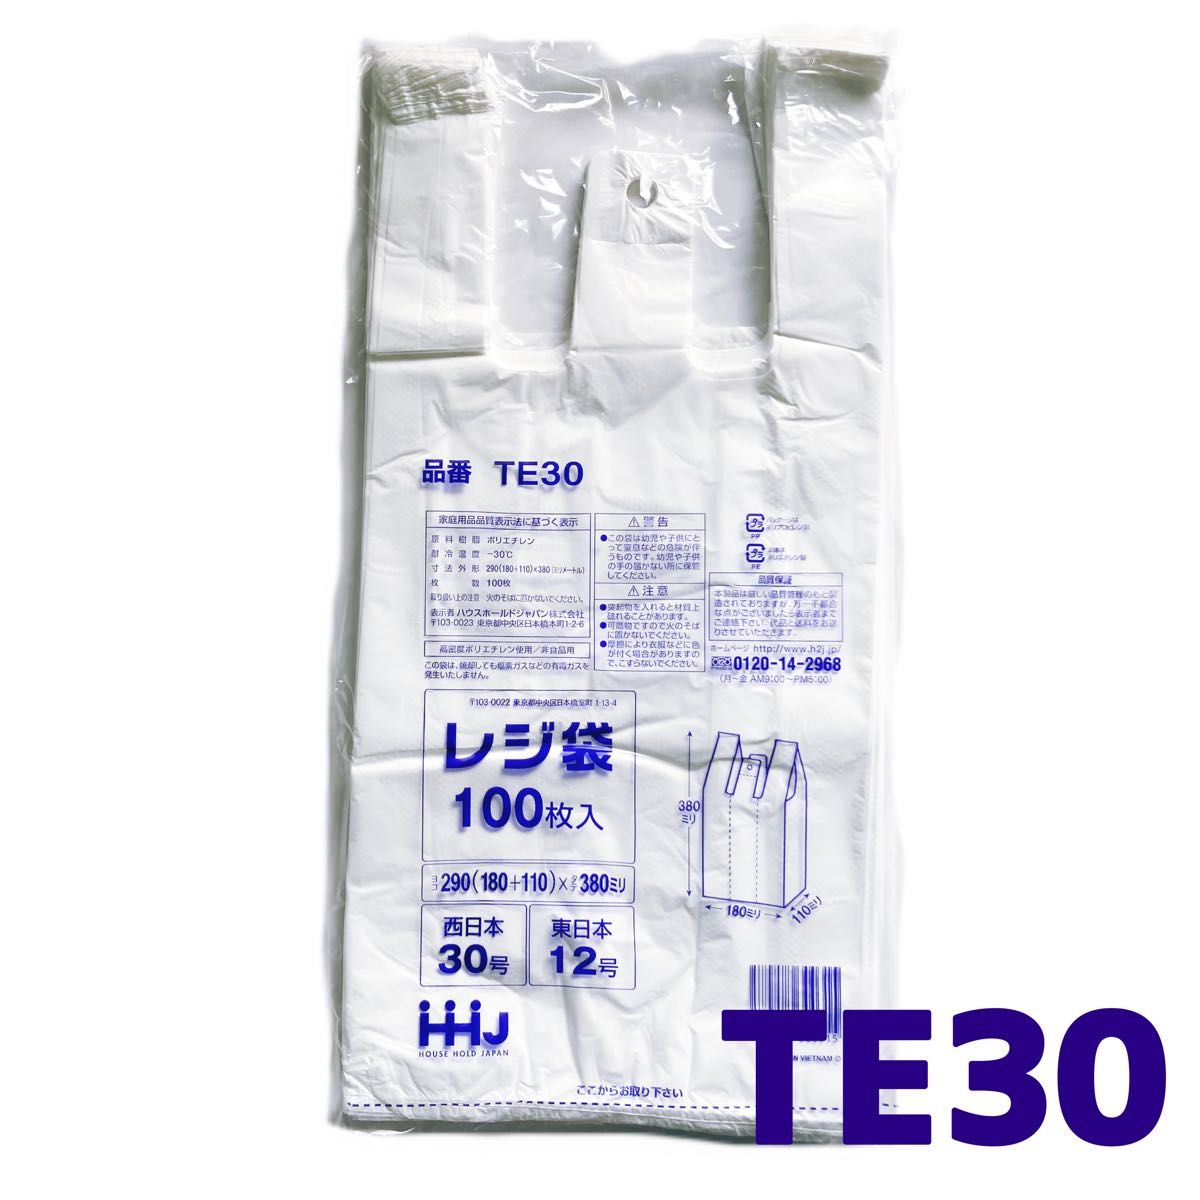 レジ袋 S 200枚 乳白色 無地 エコバッグ 手提げ袋 買い物袋 スーパーの袋 ビニール袋 ポリ袋 ゴミ袋 TE30